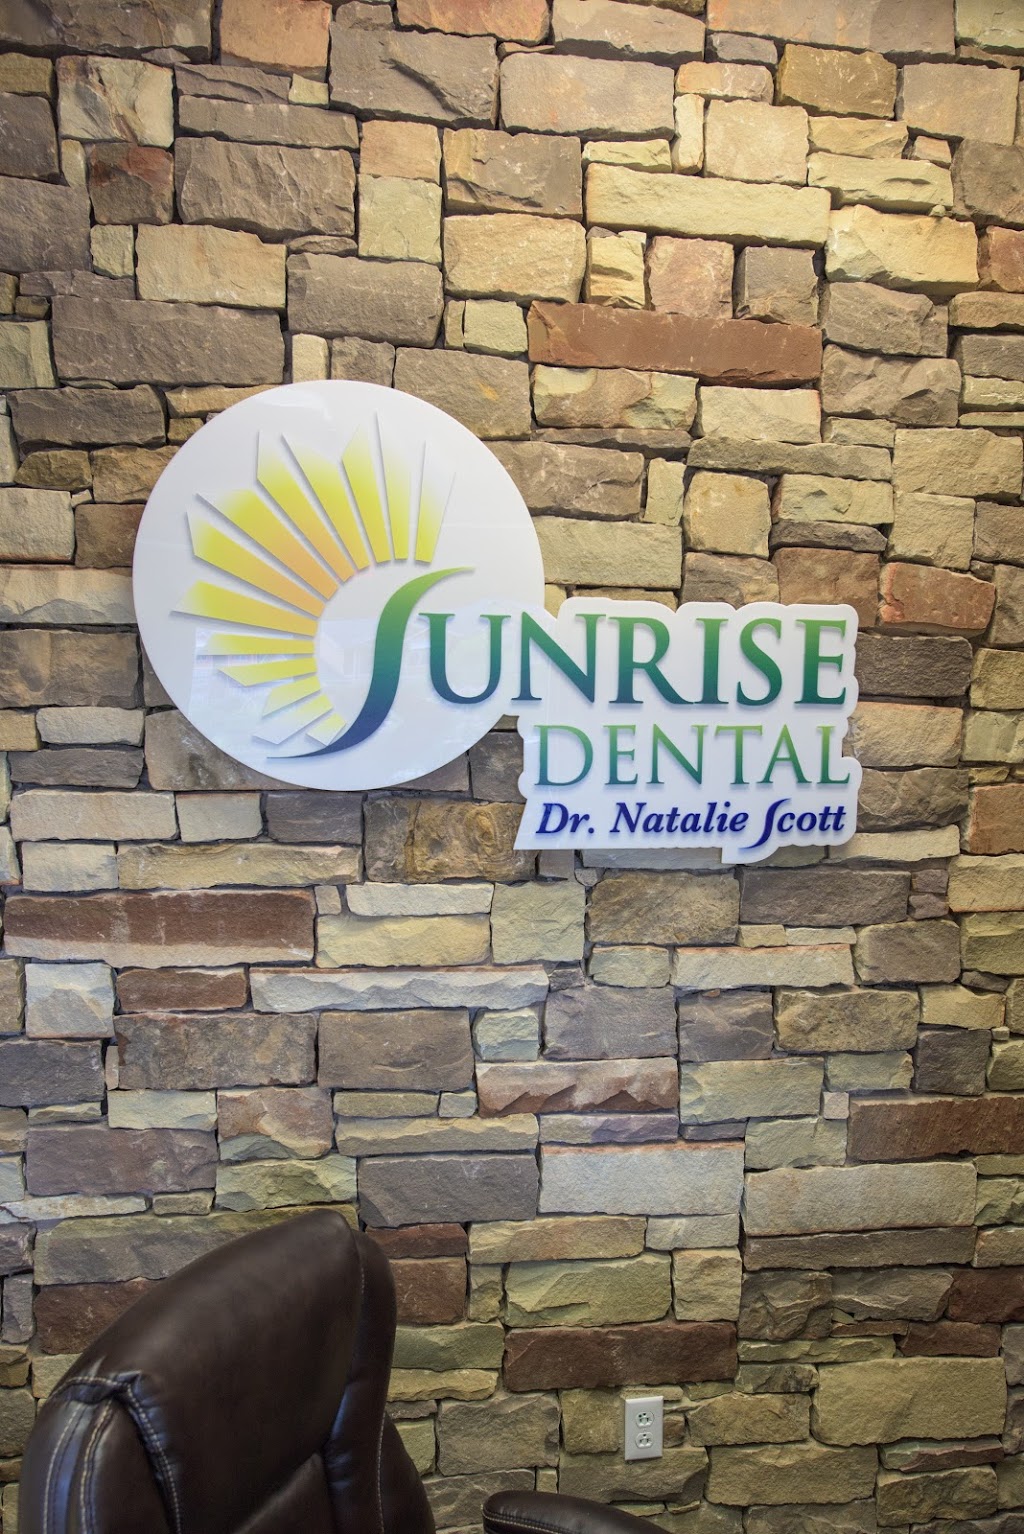 Sunrise Dental | 4000 Sunrise Rd #3100, Round Rock, TX 78665 | Phone: (512) 432-5878